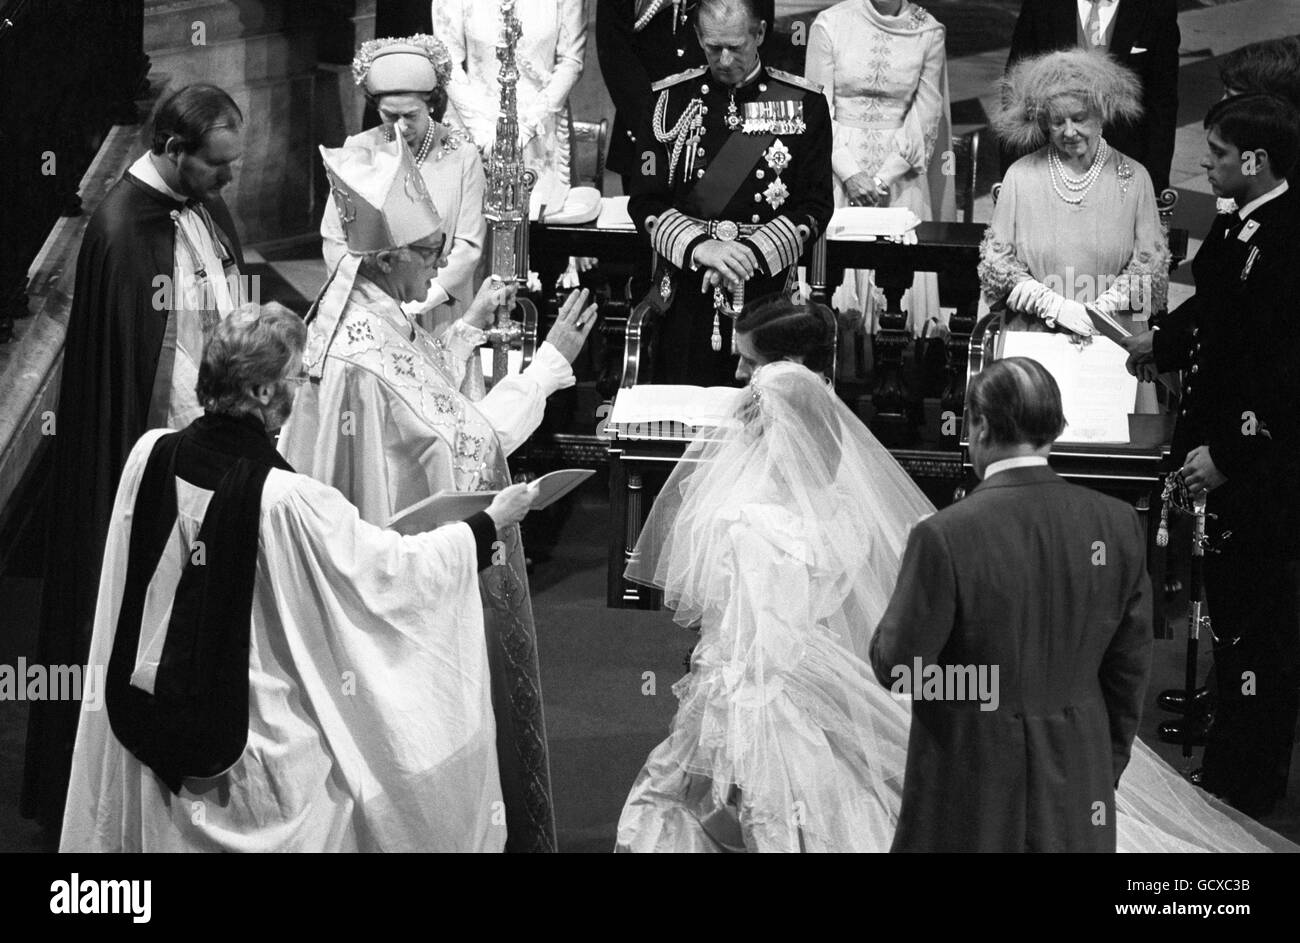 Le prince et la princesse de Galles s'agenouillent devant l'archevêque de Canterbury, Robert Runcie, pour une bénédiction lors de leur mariage à la cathédrale Saint-Paul. Banque D'Images